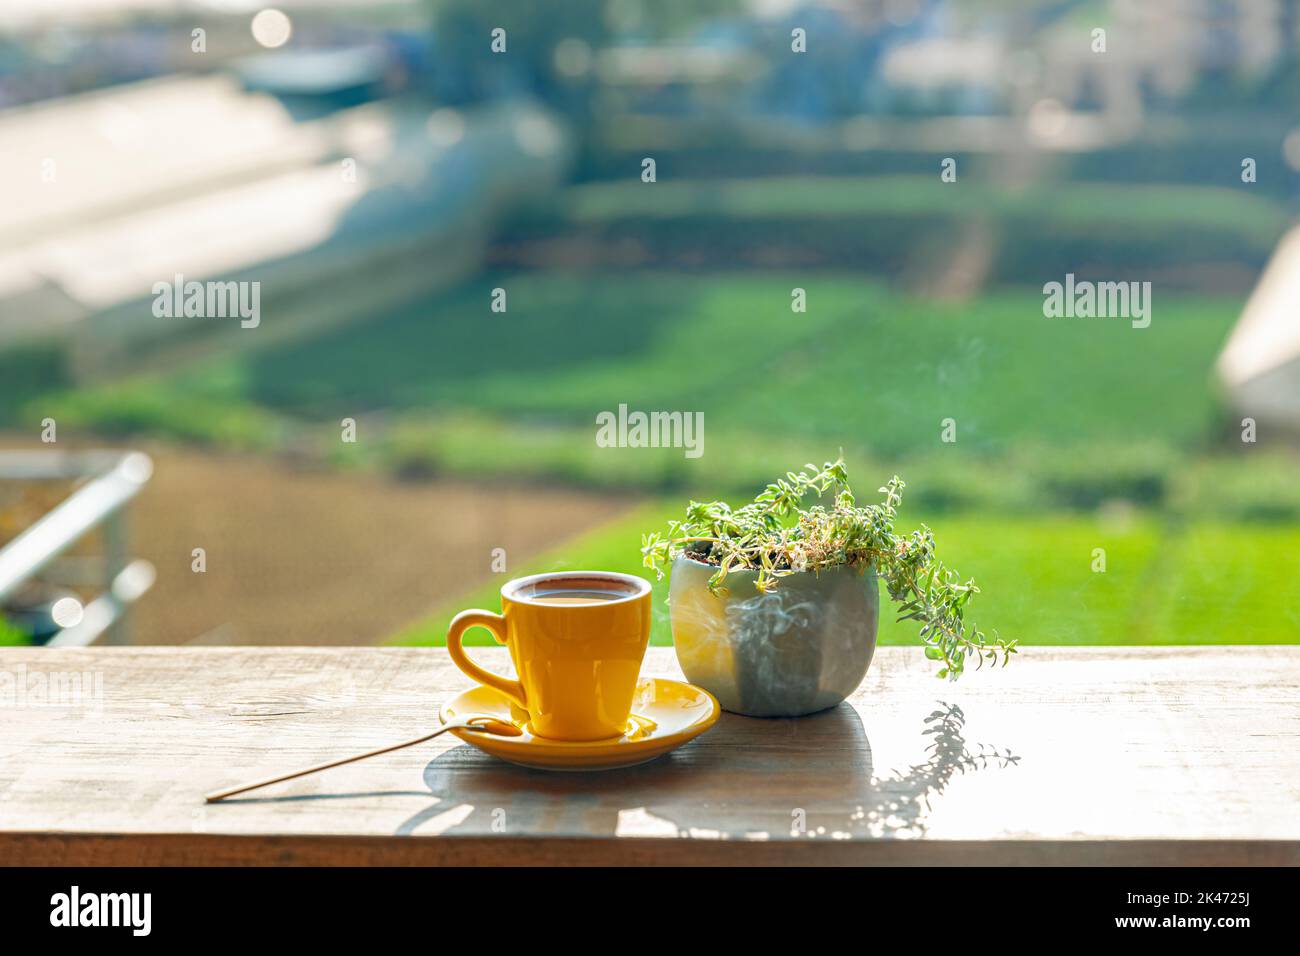 Una tazza di caffè caldo è accanto ad una pianta in vaso su un tavolo di legno, alla luce del sole del pomeriggio Foto Stock